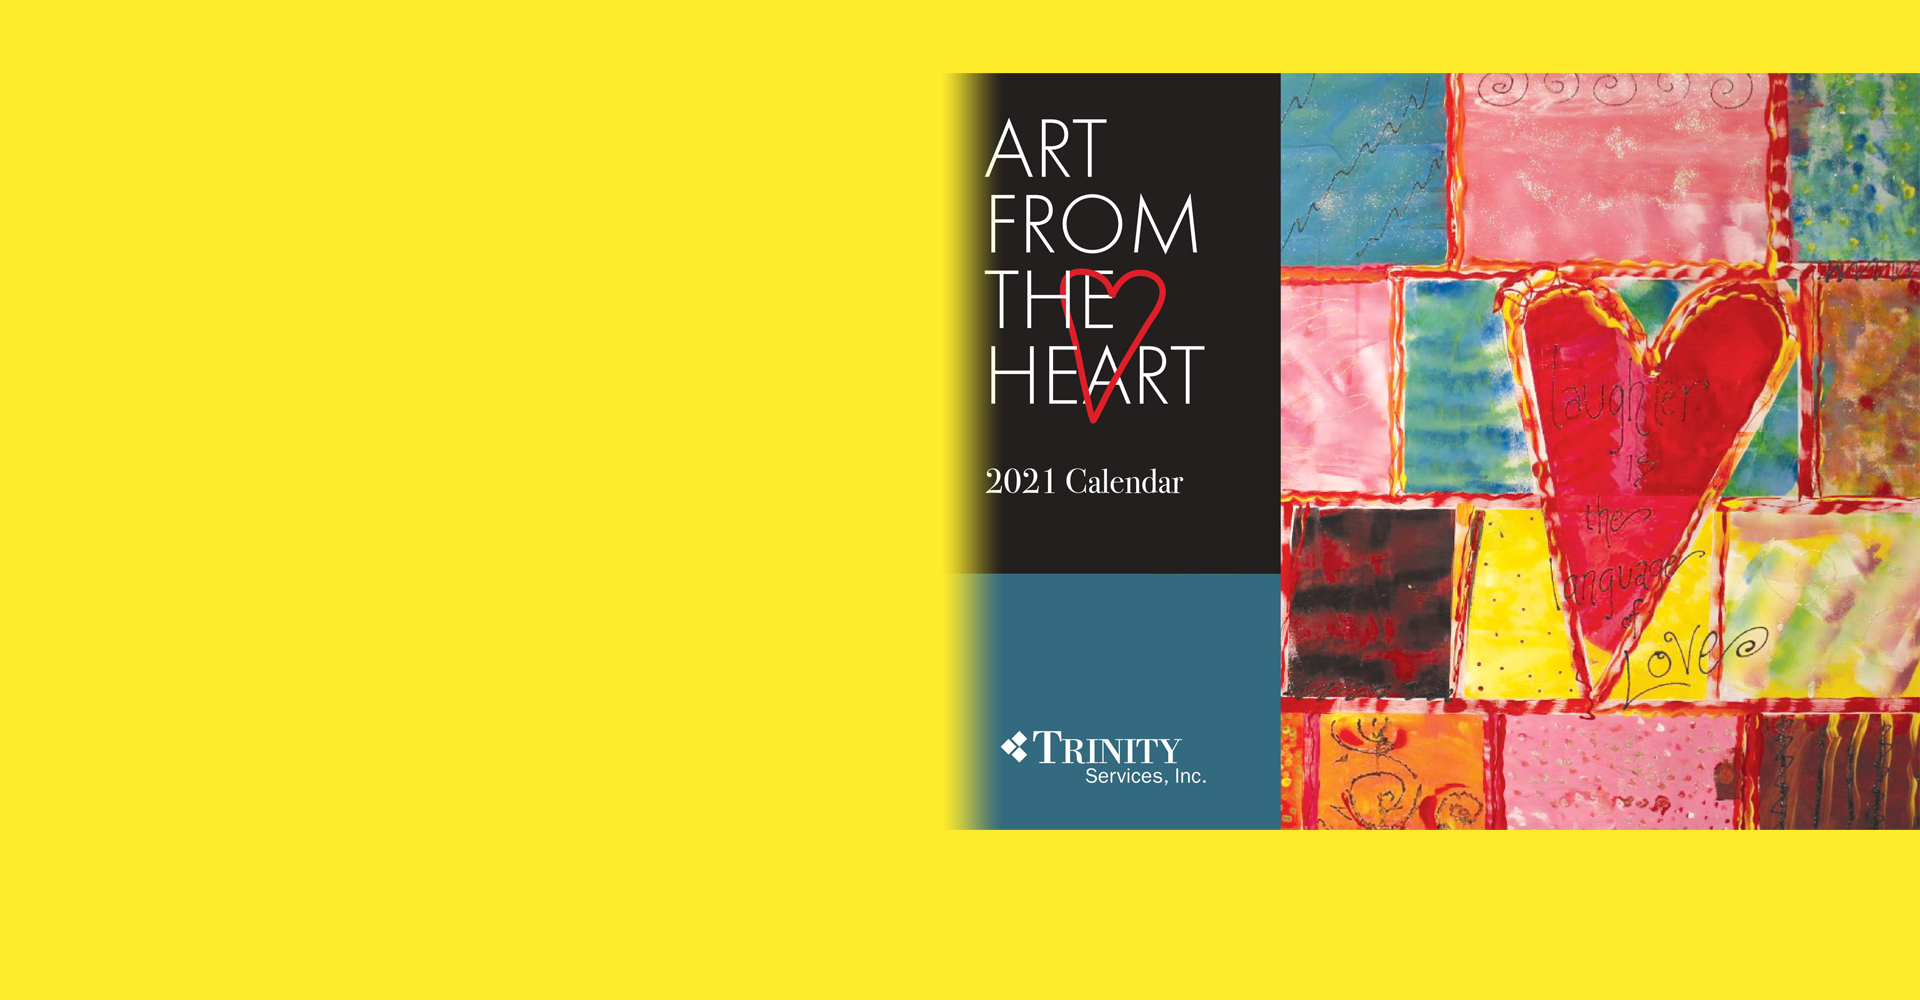 Art from the Heart Calendar Image